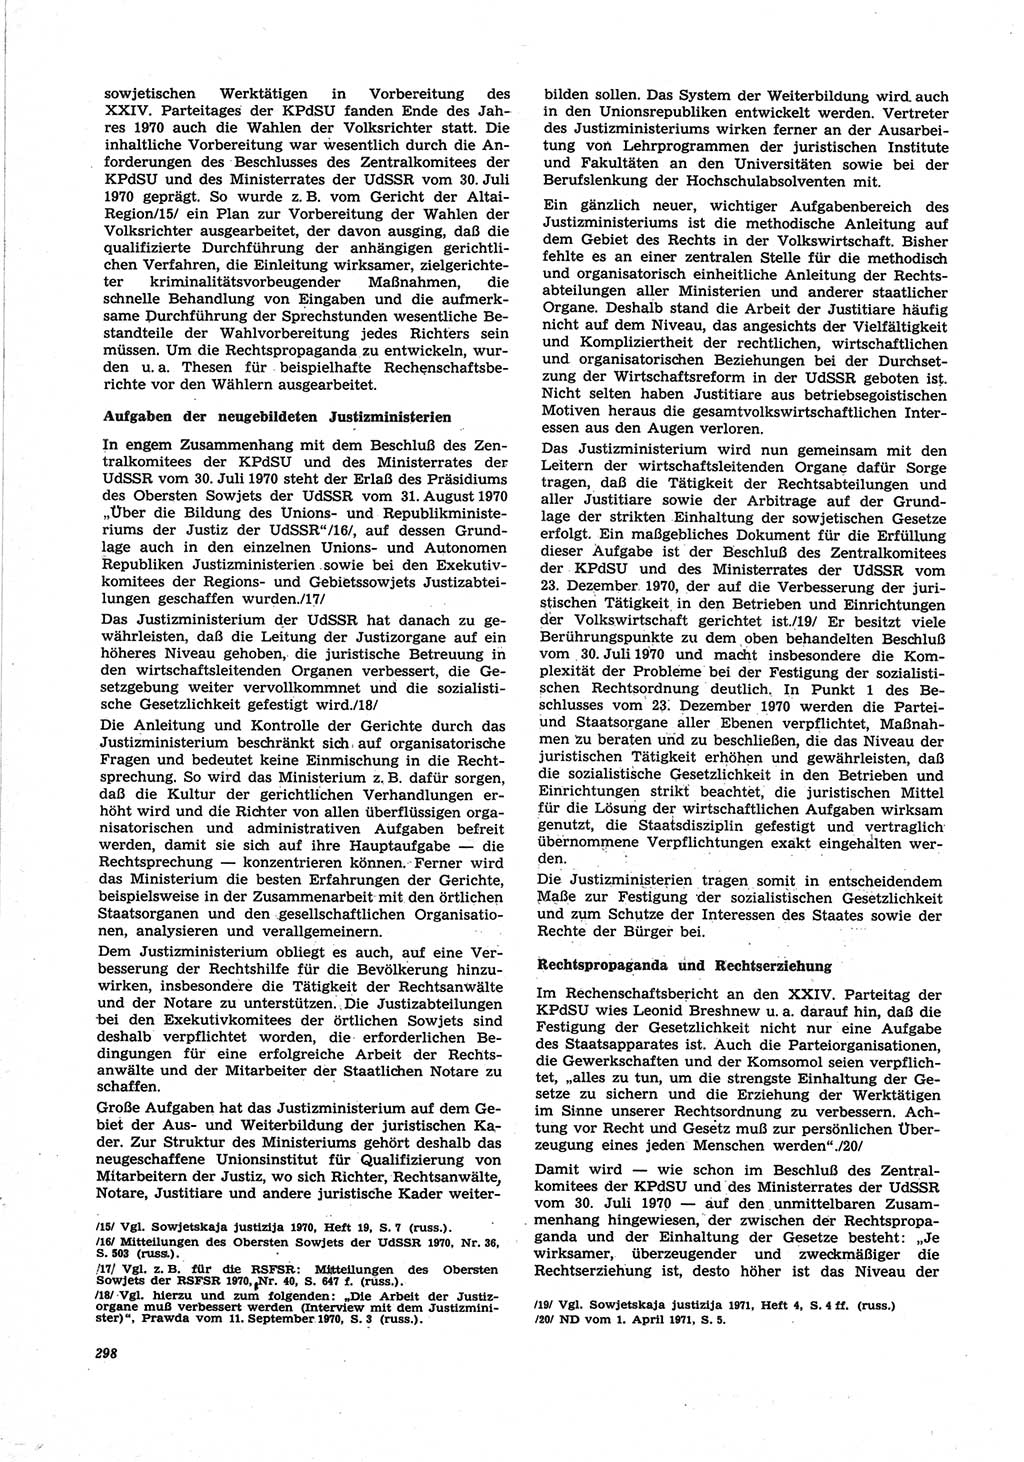 Neue Justiz (NJ), Zeitschrift für Recht und Rechtswissenschaft [Deutsche Demokratische Republik (DDR)], 25. Jahrgang 1971, Seite 298 (NJ DDR 1971, S. 298)